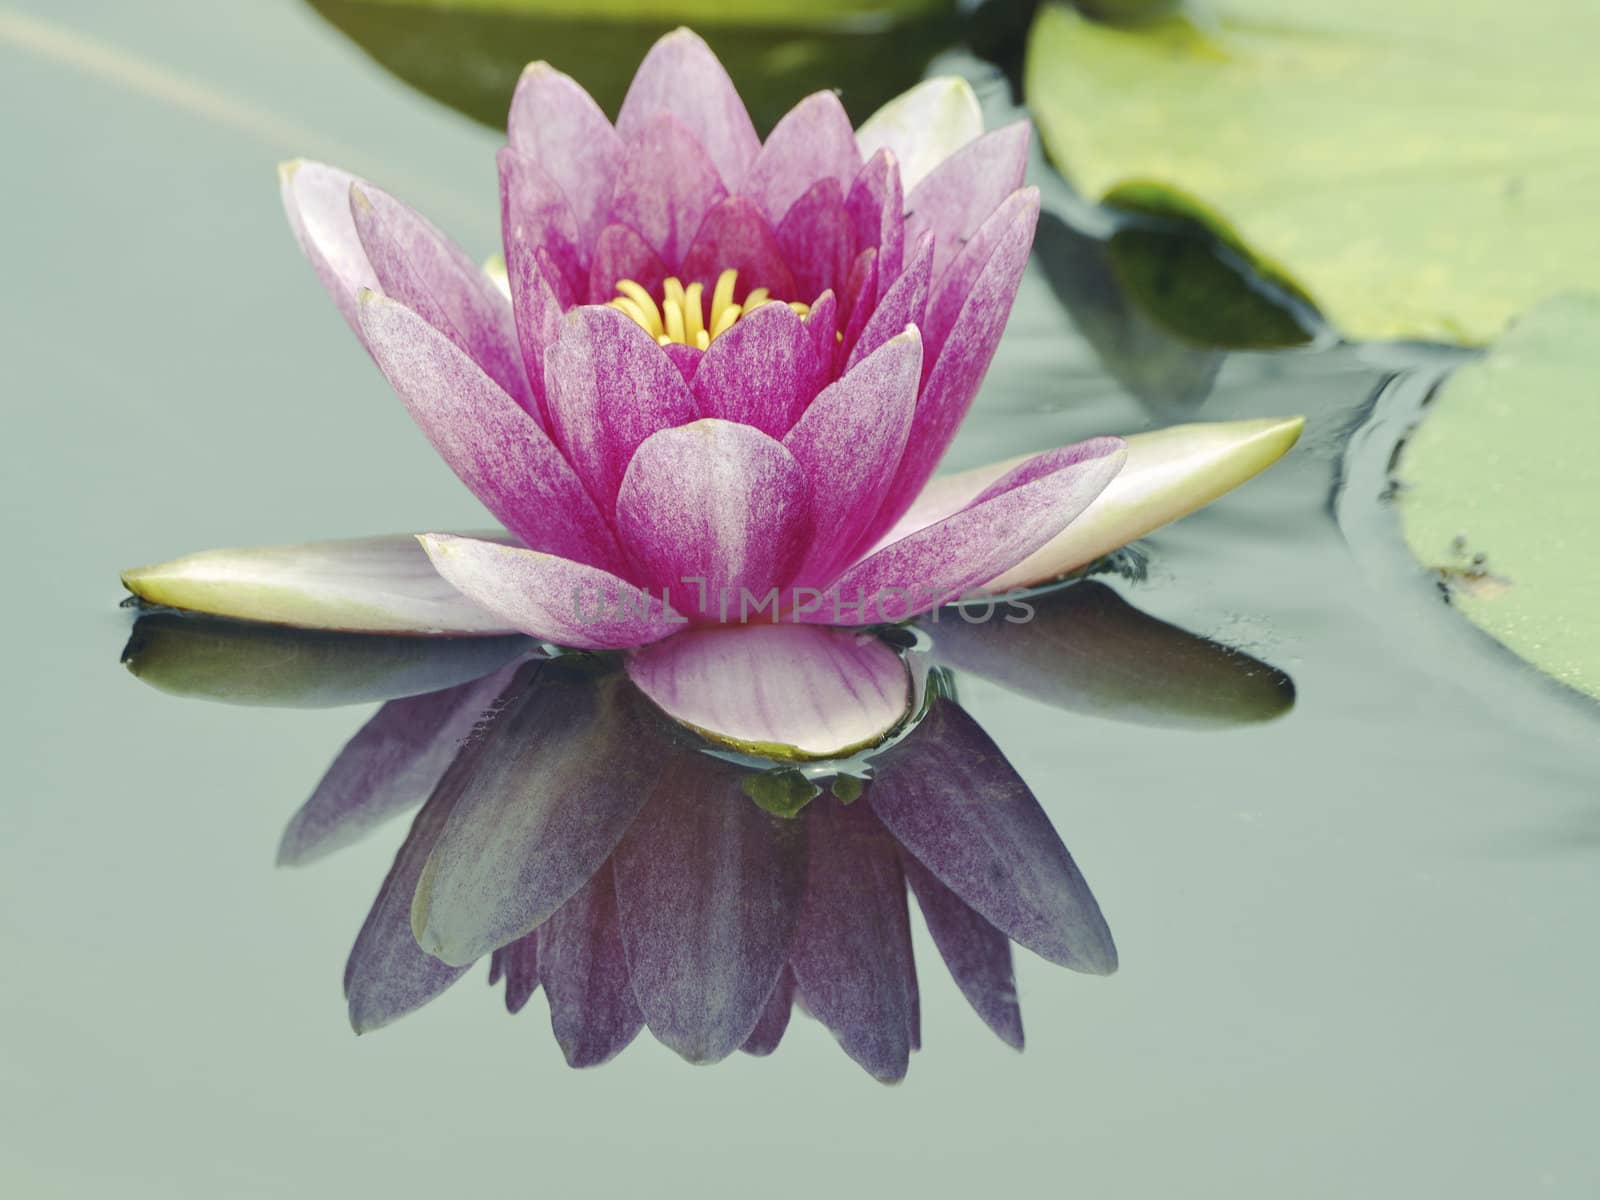 light key image of blossom lotus flower in Japanese pond; focus on flower